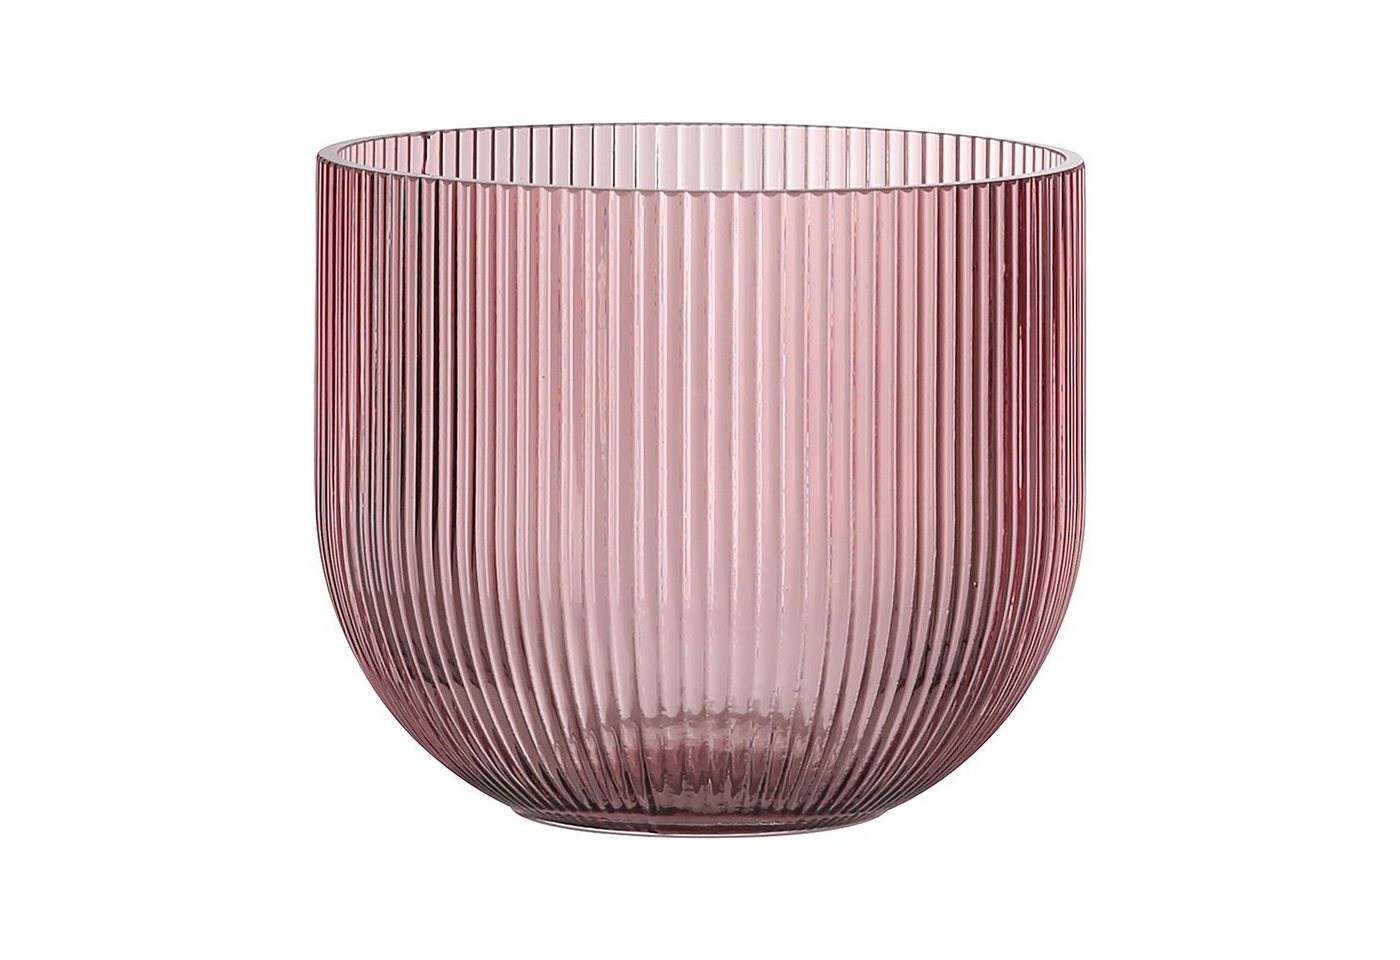 Fink Windlicht Windlicht SOLARI - rose - Glas - H.13,5cm x Ø 16cm, durchgefärbt - mundgeblasen von Fink